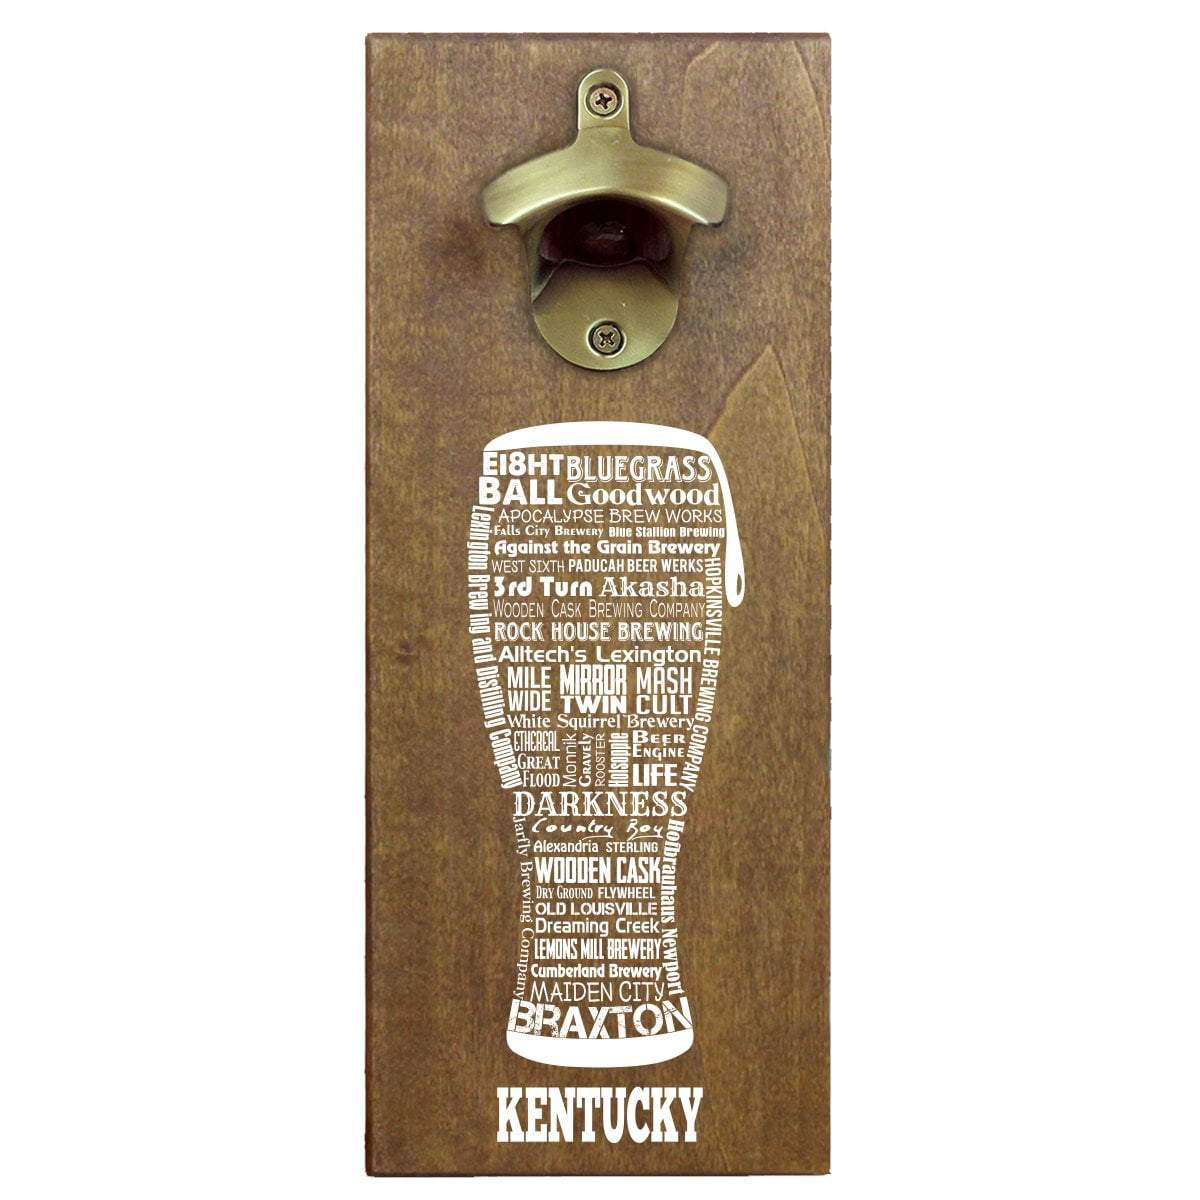 Louisville Kentucky Bottle Opener Key Chain 